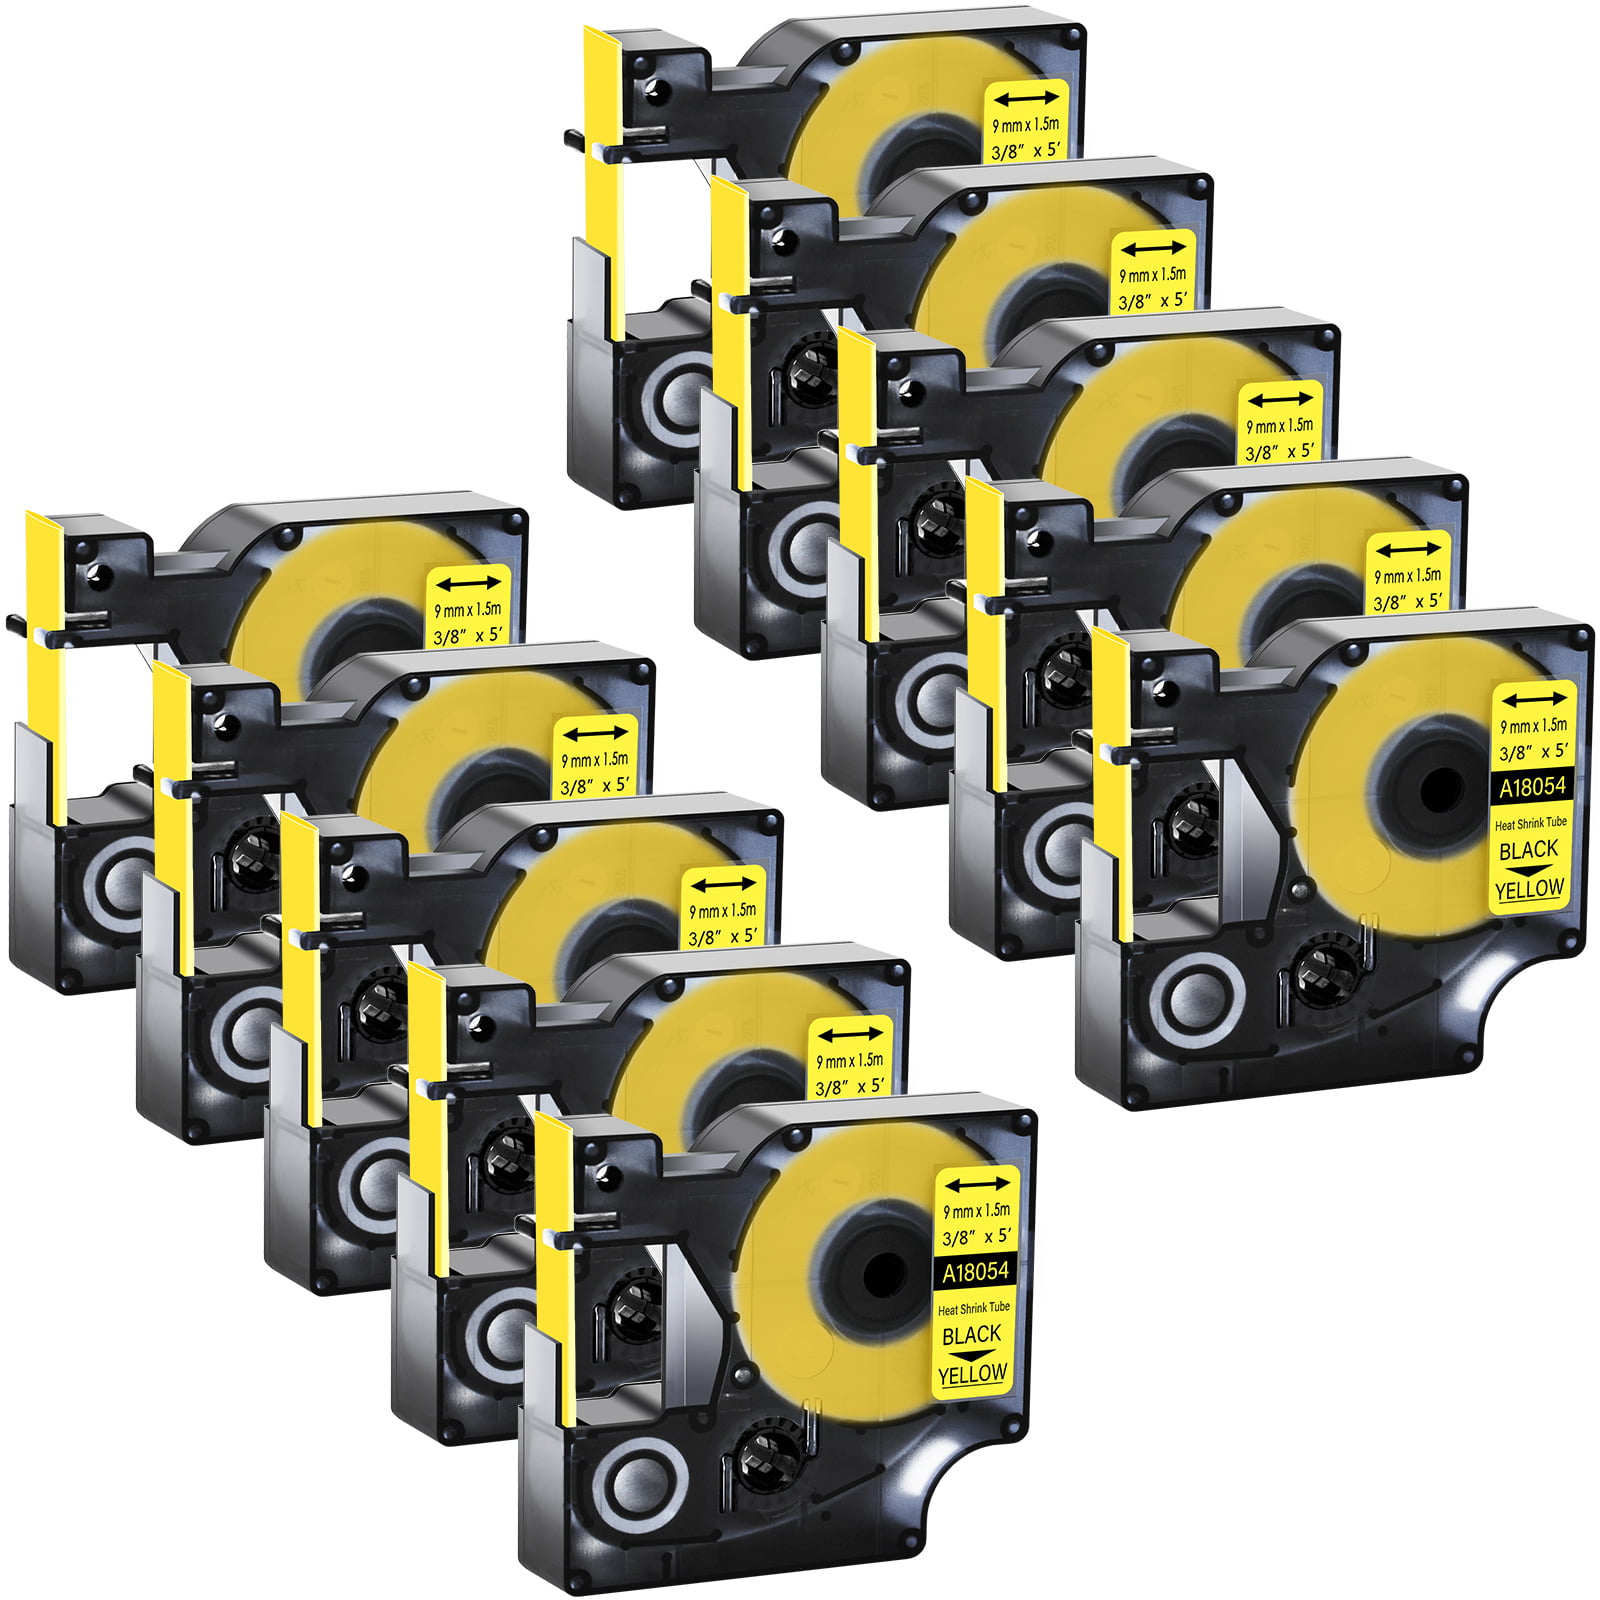 10 PK 18054 Heat-Shrink Tube Black on Yellow Tape for Dymo LabelWriter 450D 3/8" 